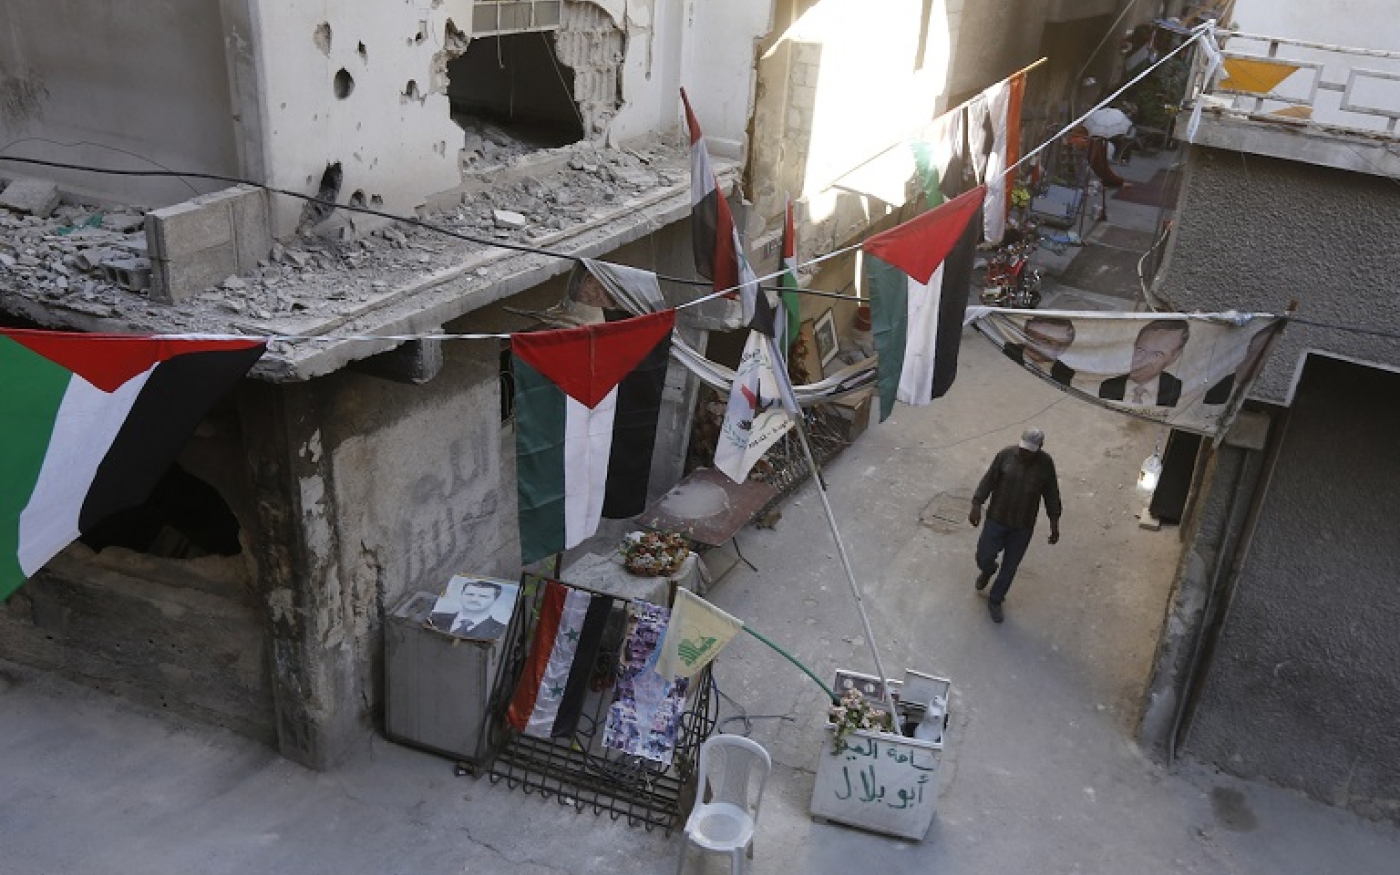 Un homme passe à côté de bâtiments détruits ornés de drapeaux palestiniens dans le camp de réfugiés palestiniens de Yarmouk, au sud de Damas (AFP)